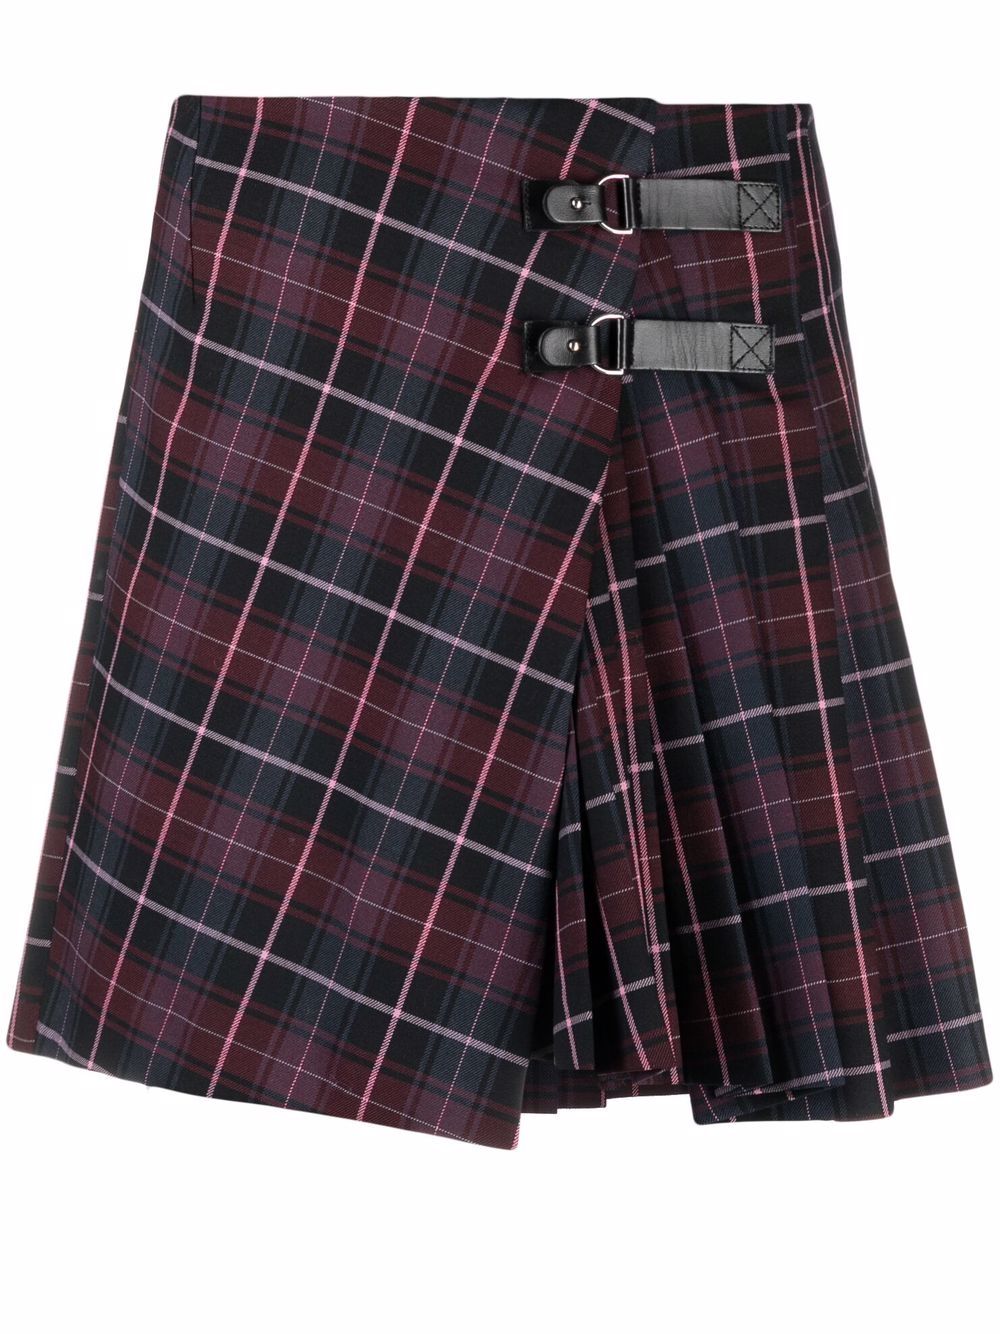 Жакет  плиссированная юбка — лучшее сочетание для образа в стиле преппи